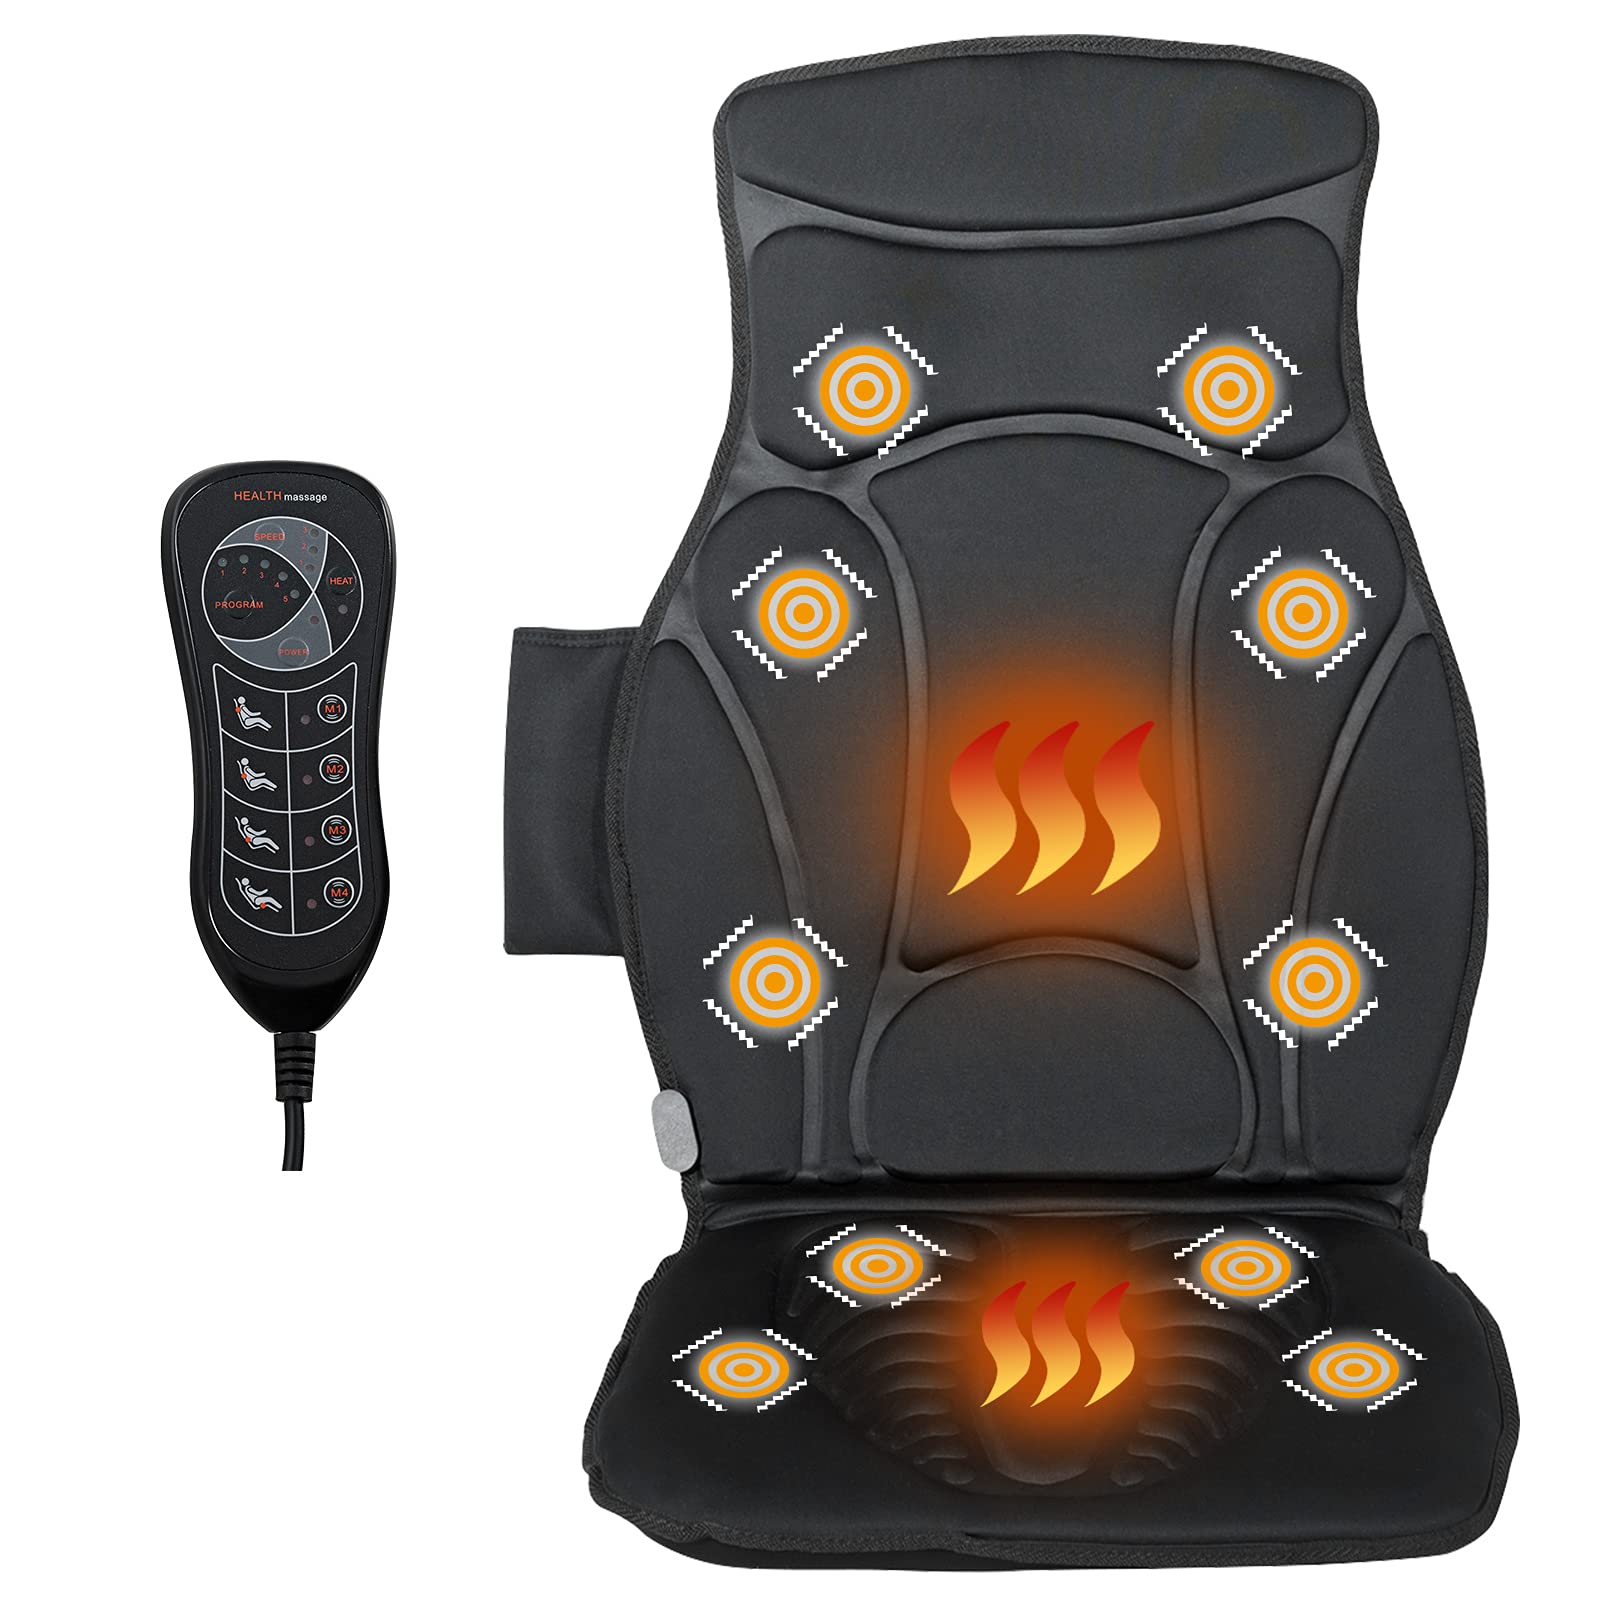 Giantex Back Massager for Back Pain, Chair Massage Pad Shiatsu Massage Seat with 10 Vibration Motors